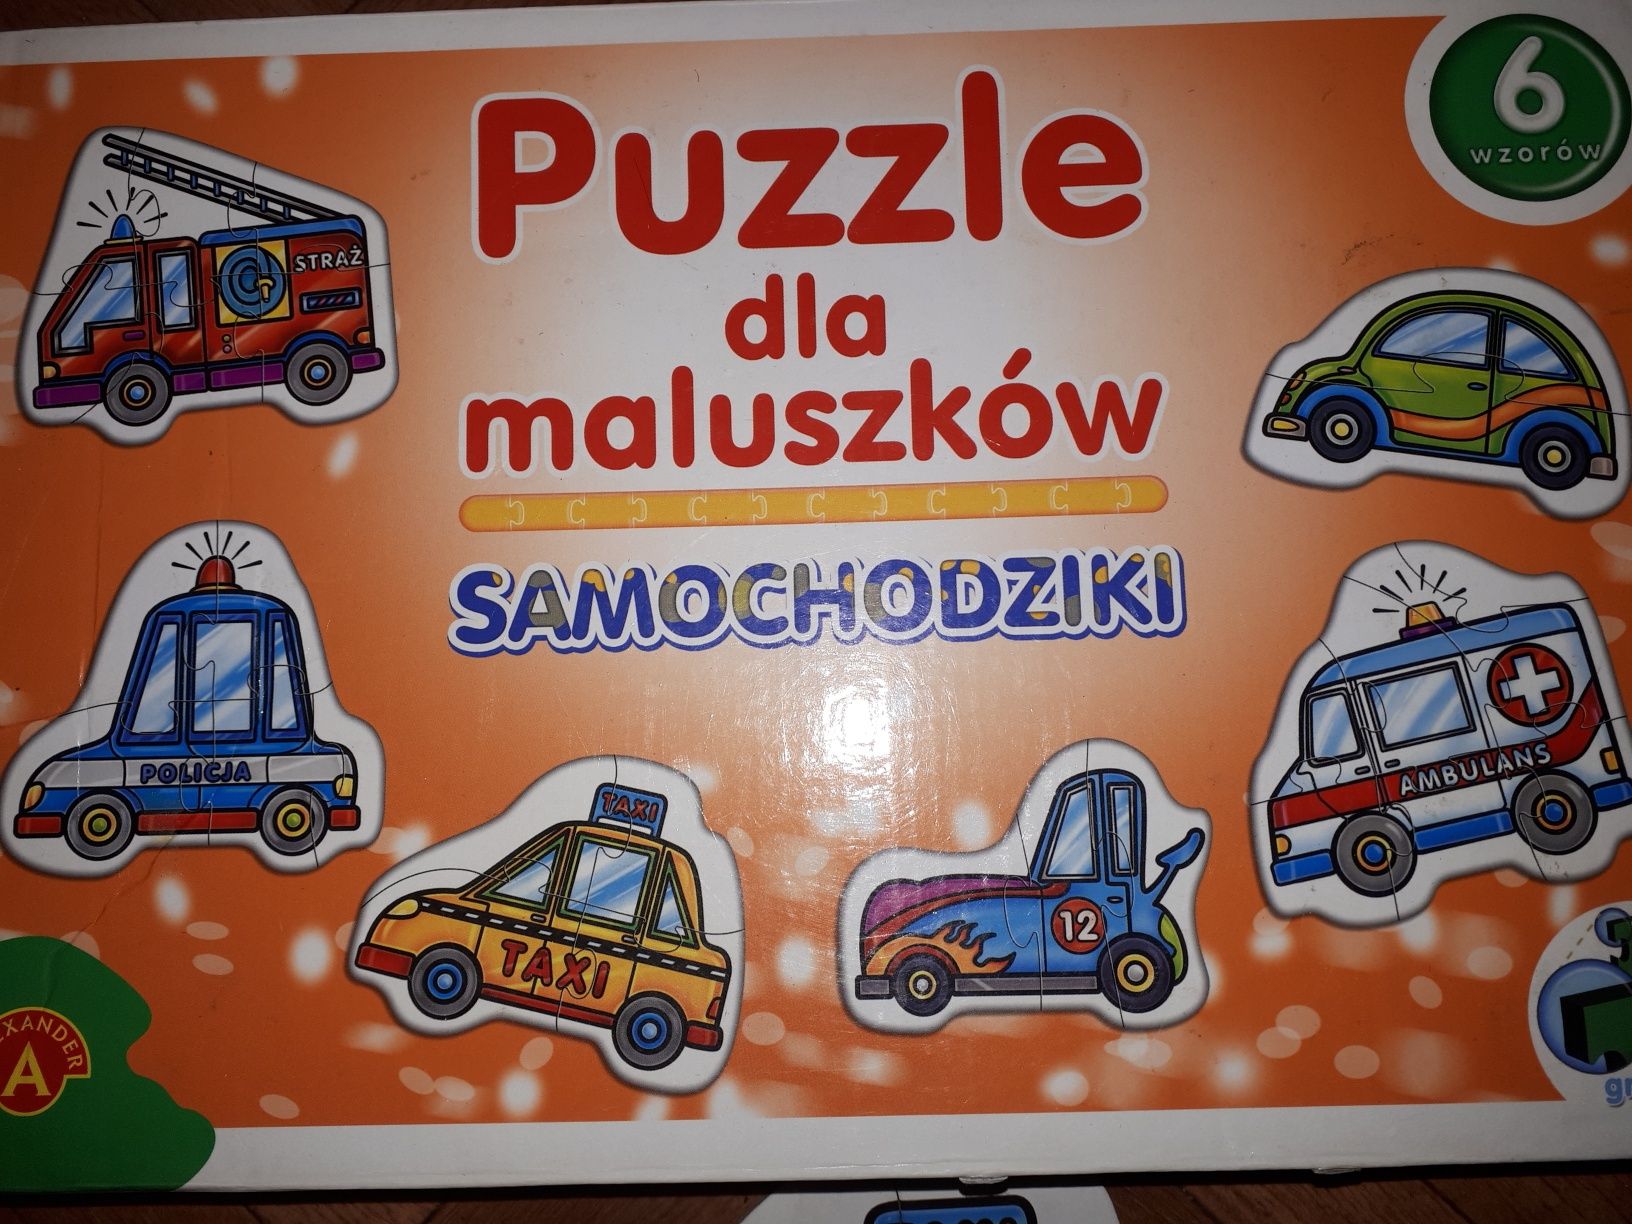 Pierwsze puzzle dla maluszka, samochodziki